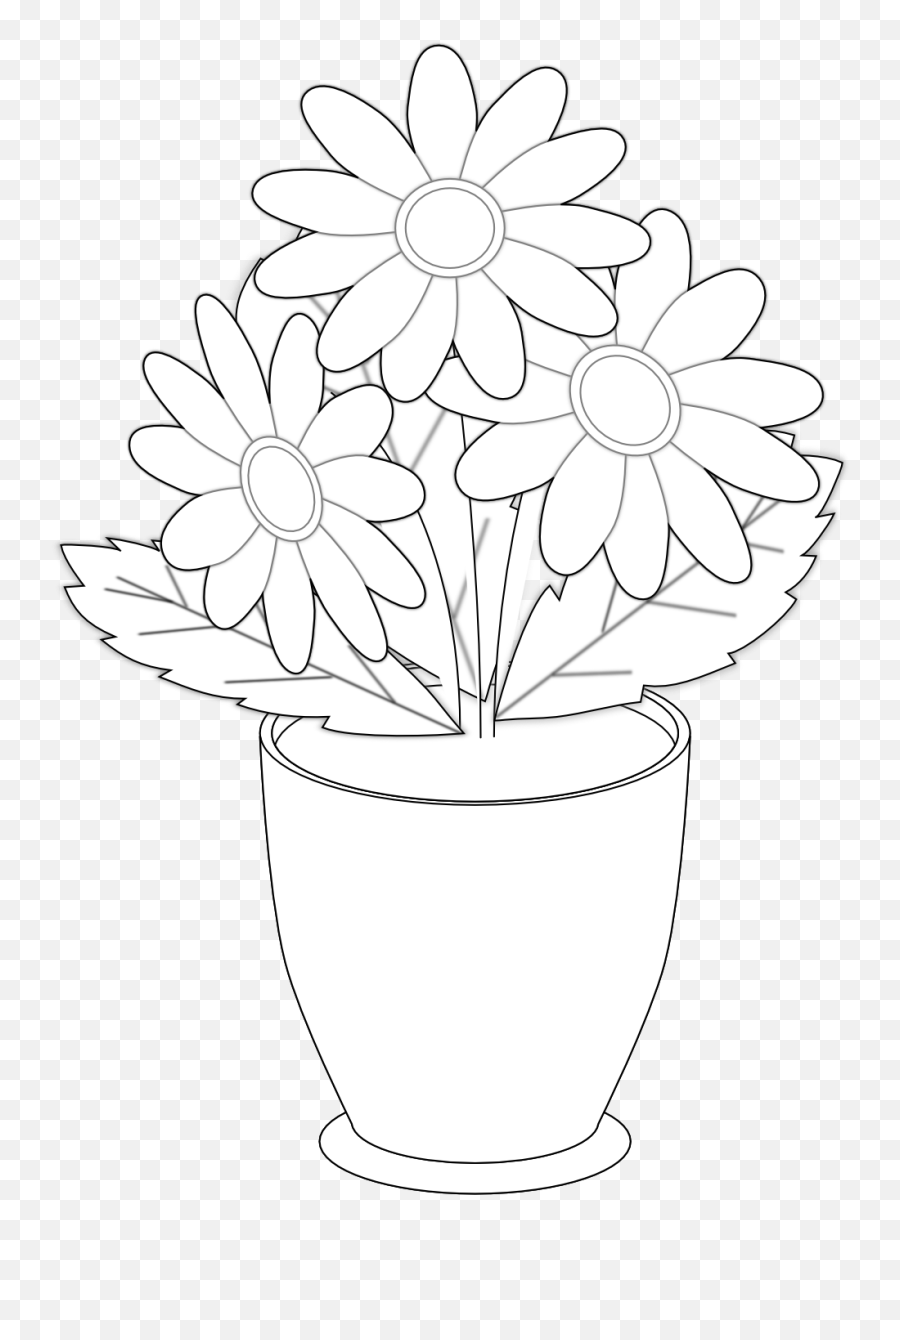 Download Daisy S Vase Black White Flower Shrub Xochi - Black Emoji,Black And White Flower Png